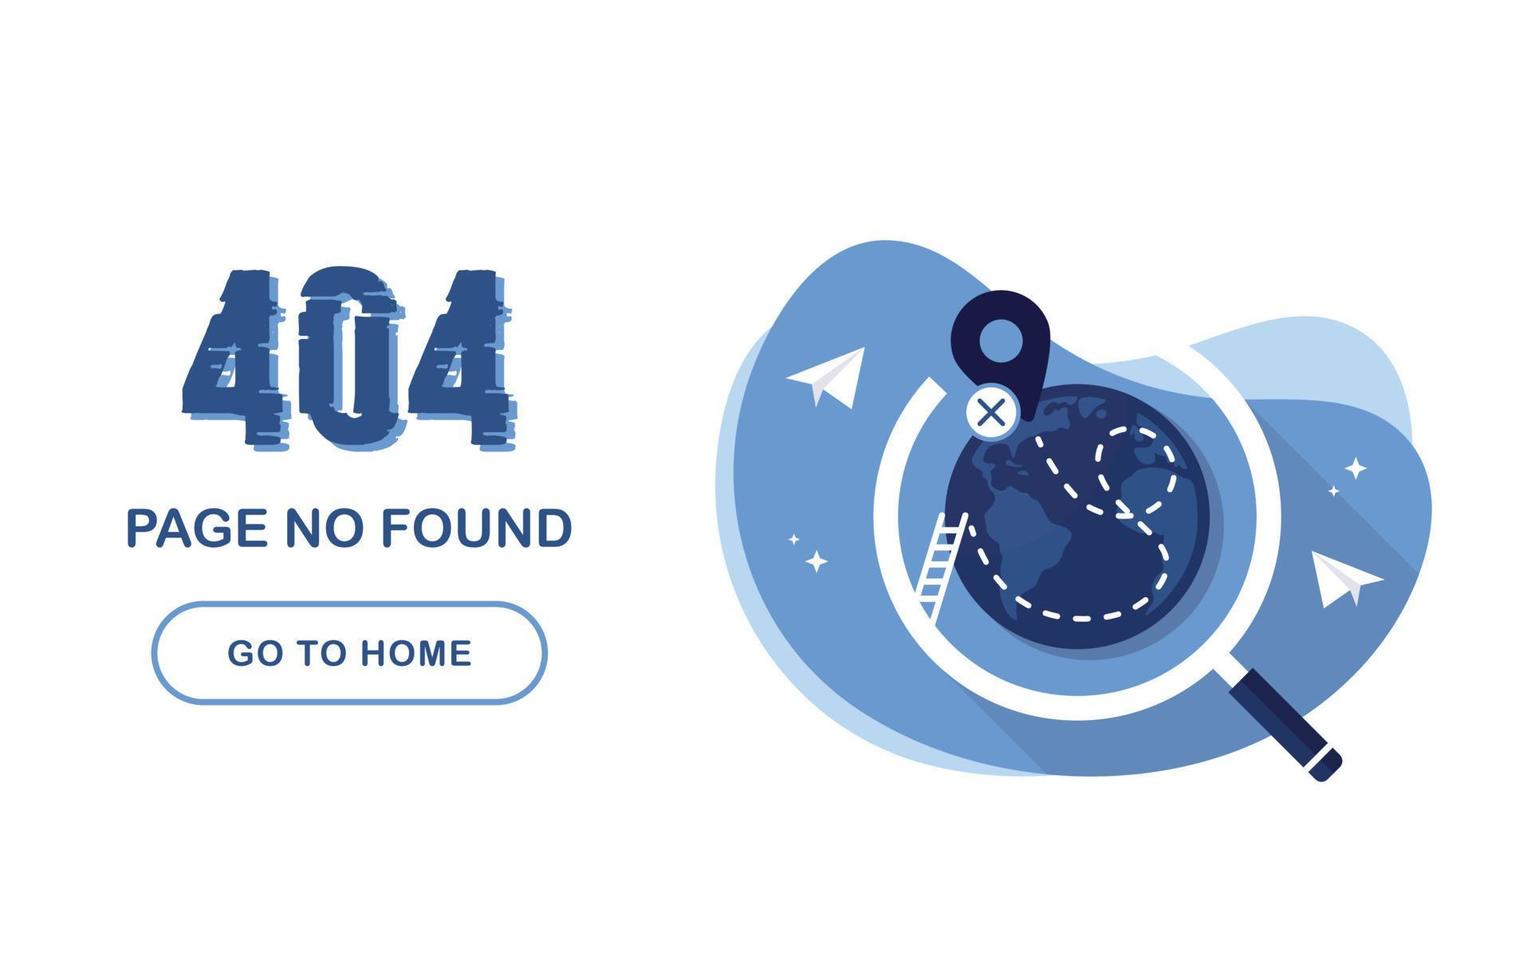 404-foutpagina niet gevonden. ga naar huis spandoek. systeemfout, kapotte pagina. voor website. planeet aarde onder een vergrootglas. geolocatie tag. manier. papieren vliegtuigjes. probleem rapport. blauw en wit. eps 10 vector